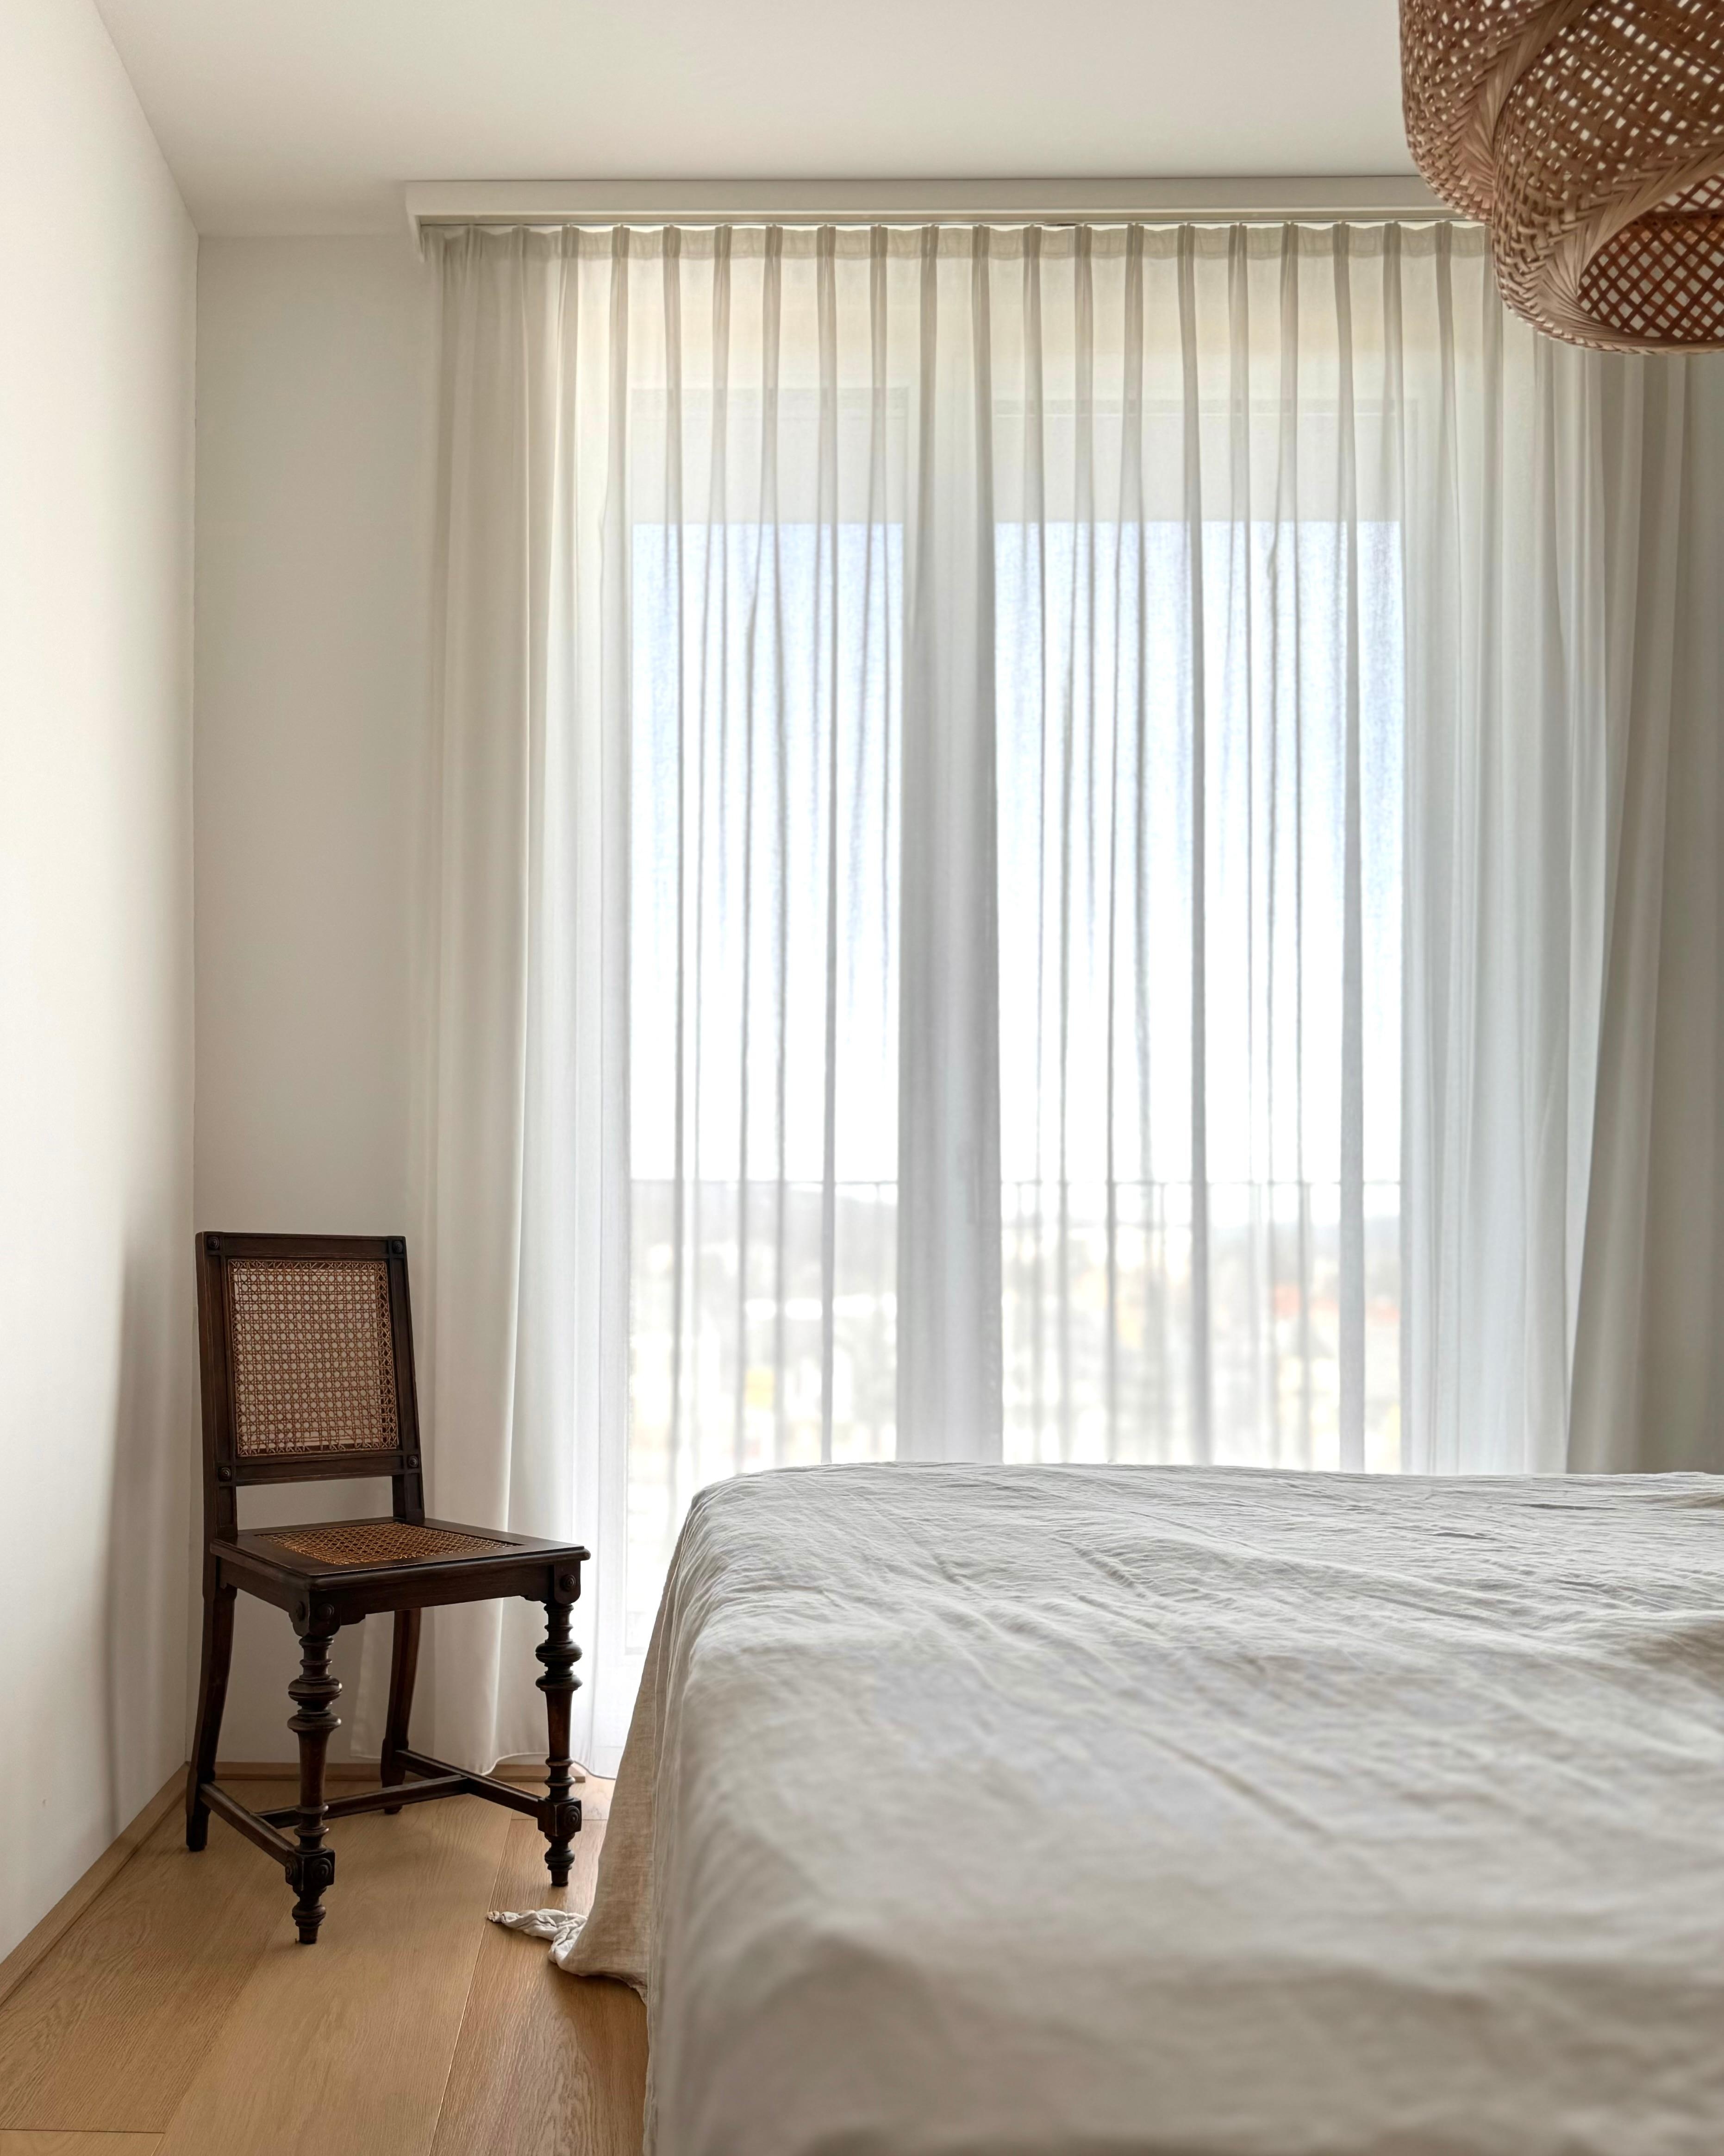 #schlafzimmer #beige #leinen #bettwäsche #stuhl #boxspringbett #japandi #minimalistisch